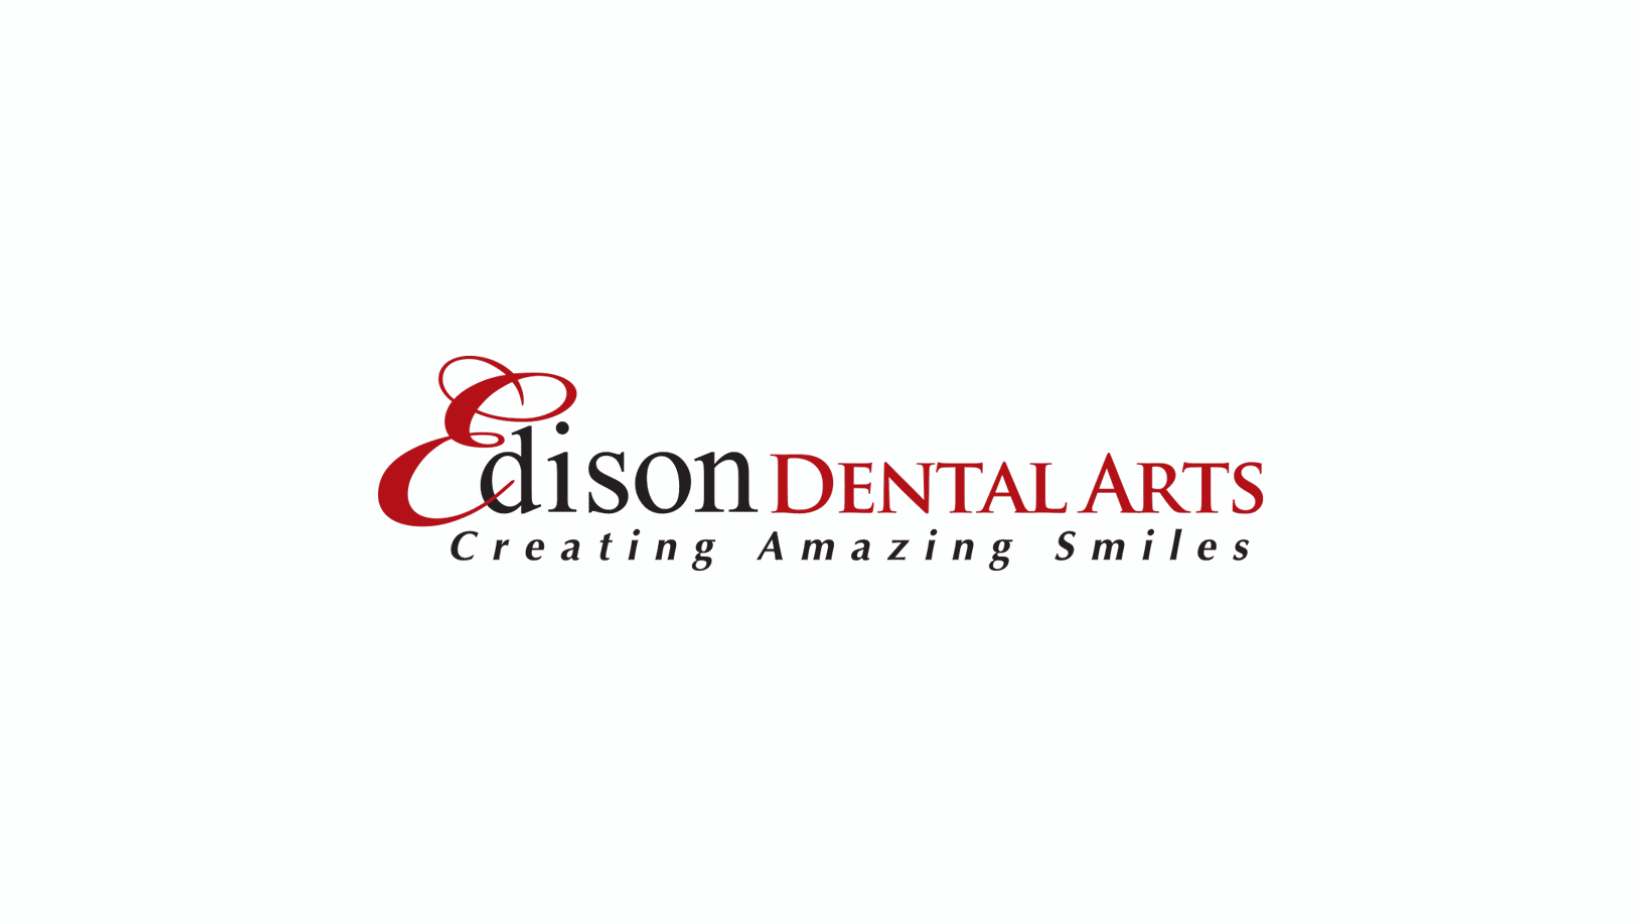 Edison Dental Arts Joins Premier Care Dental Management